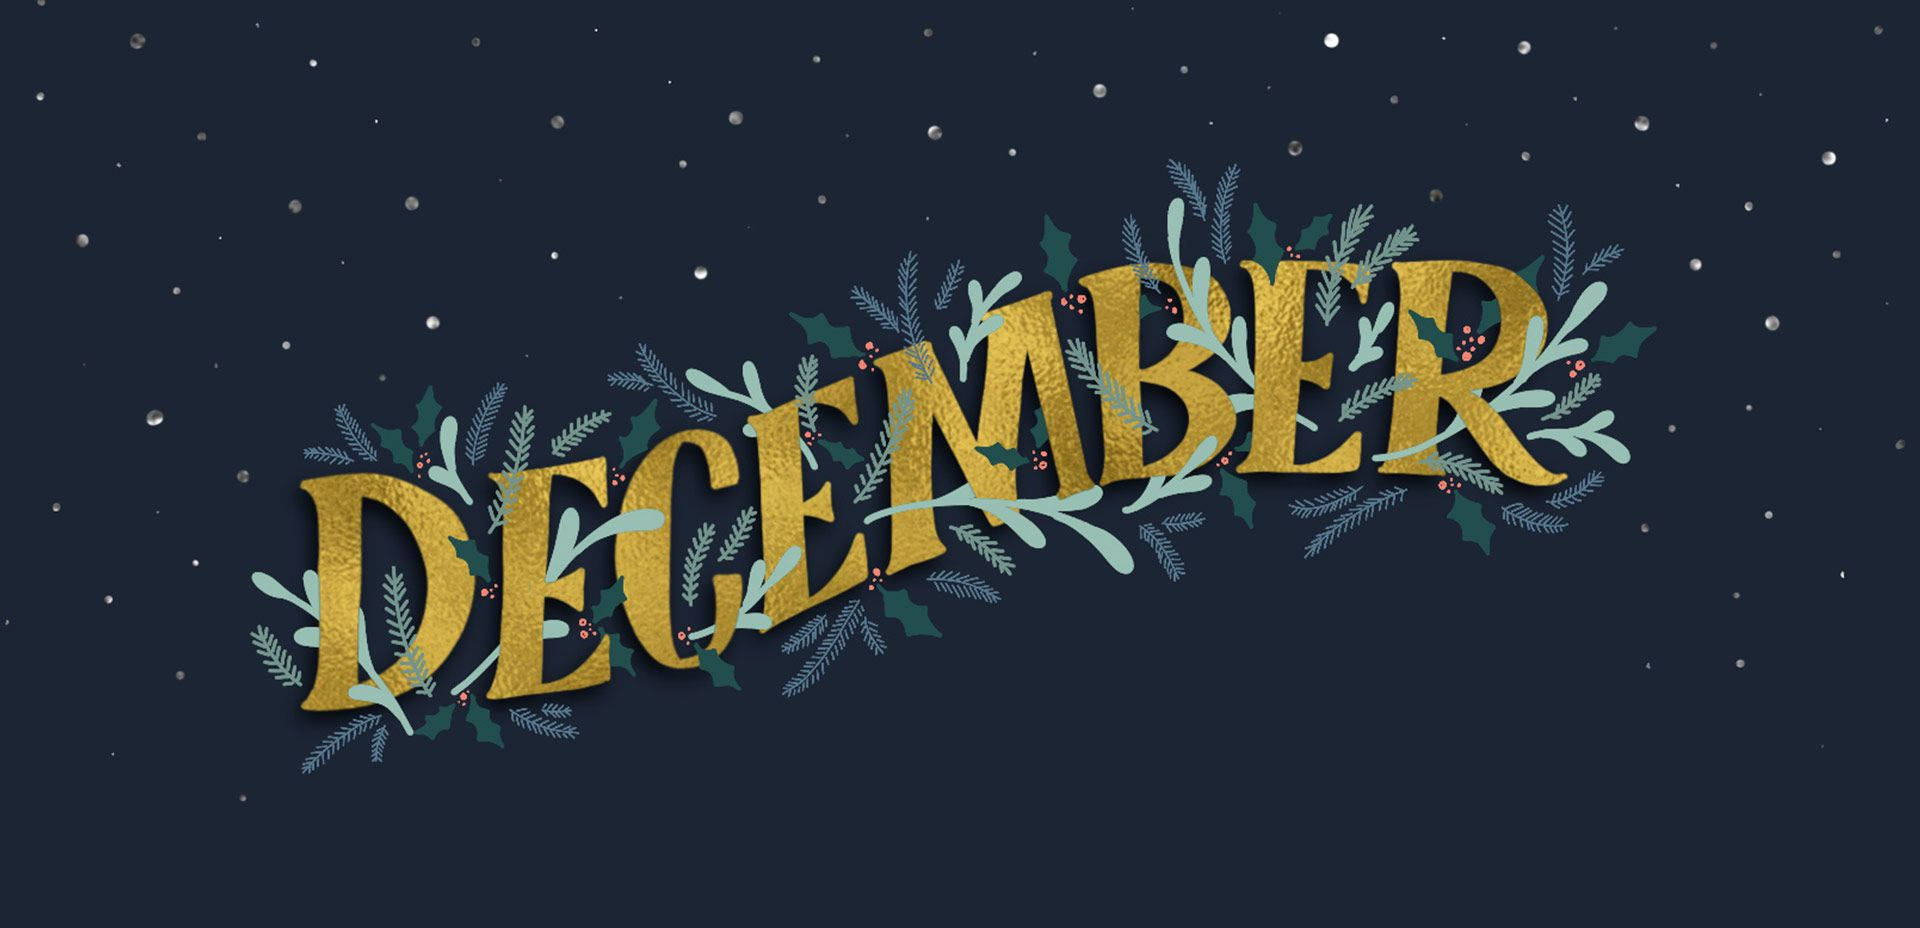 December Lettering Design